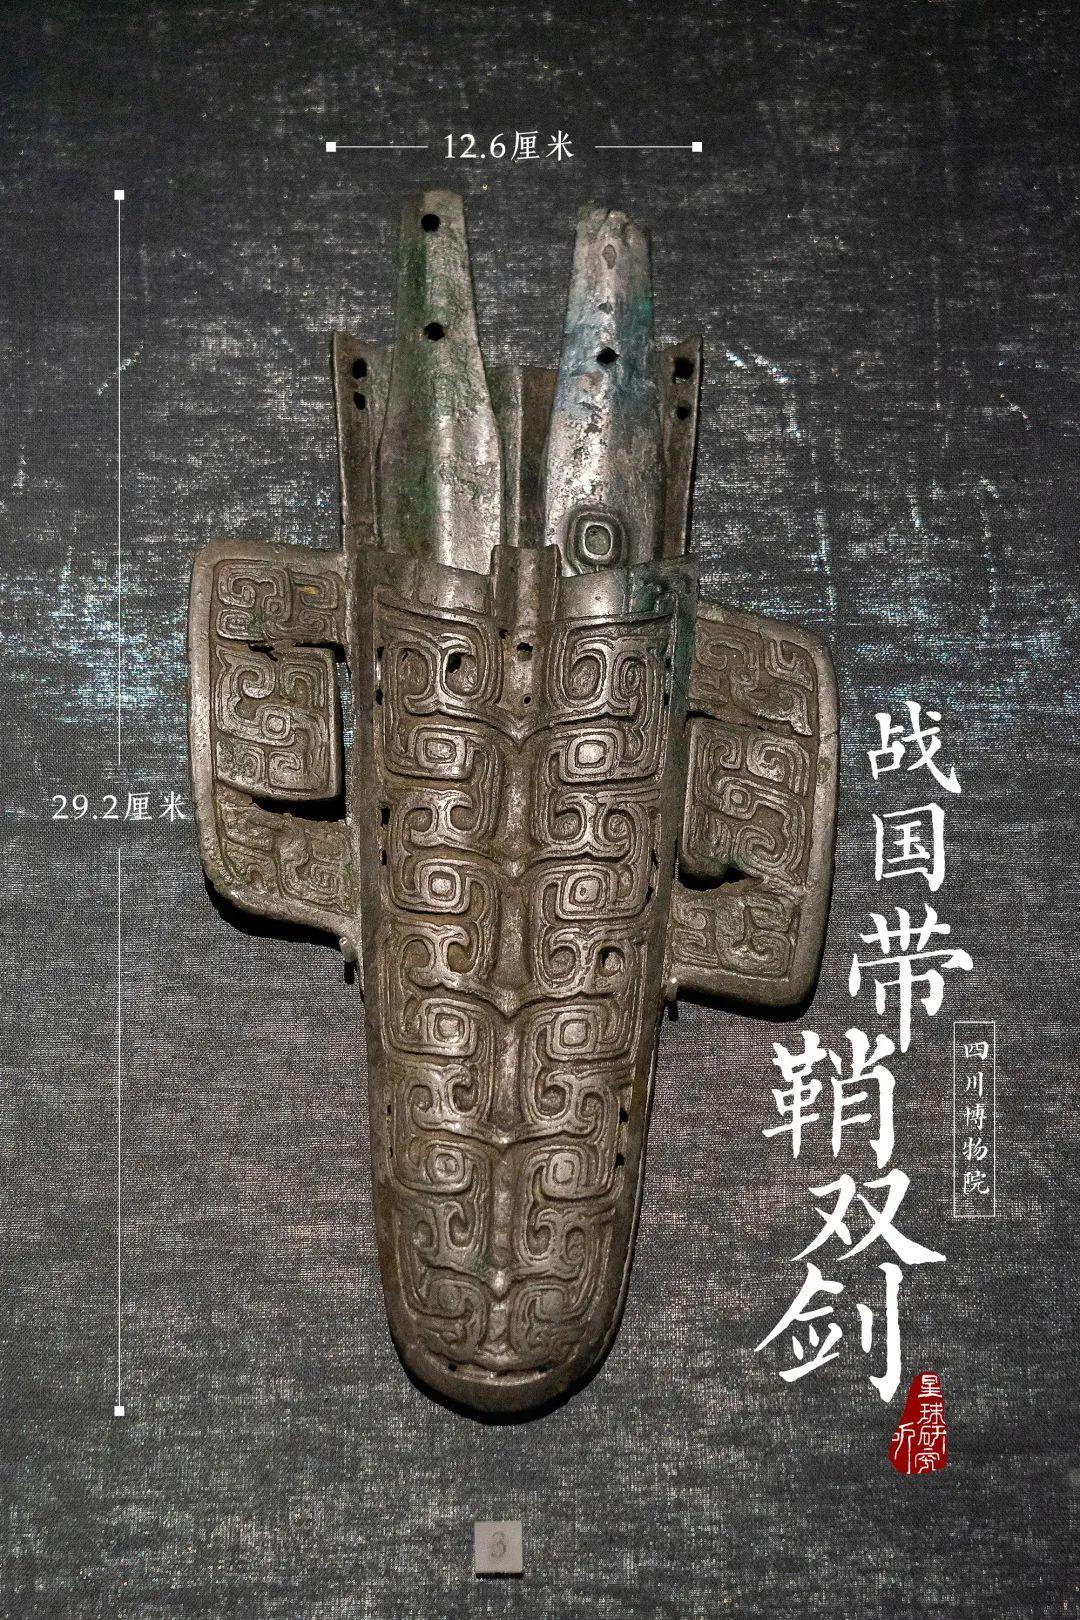 中国古代兵器进化史 中国古代兵器史的发展大概是什么流程？ - 知乎